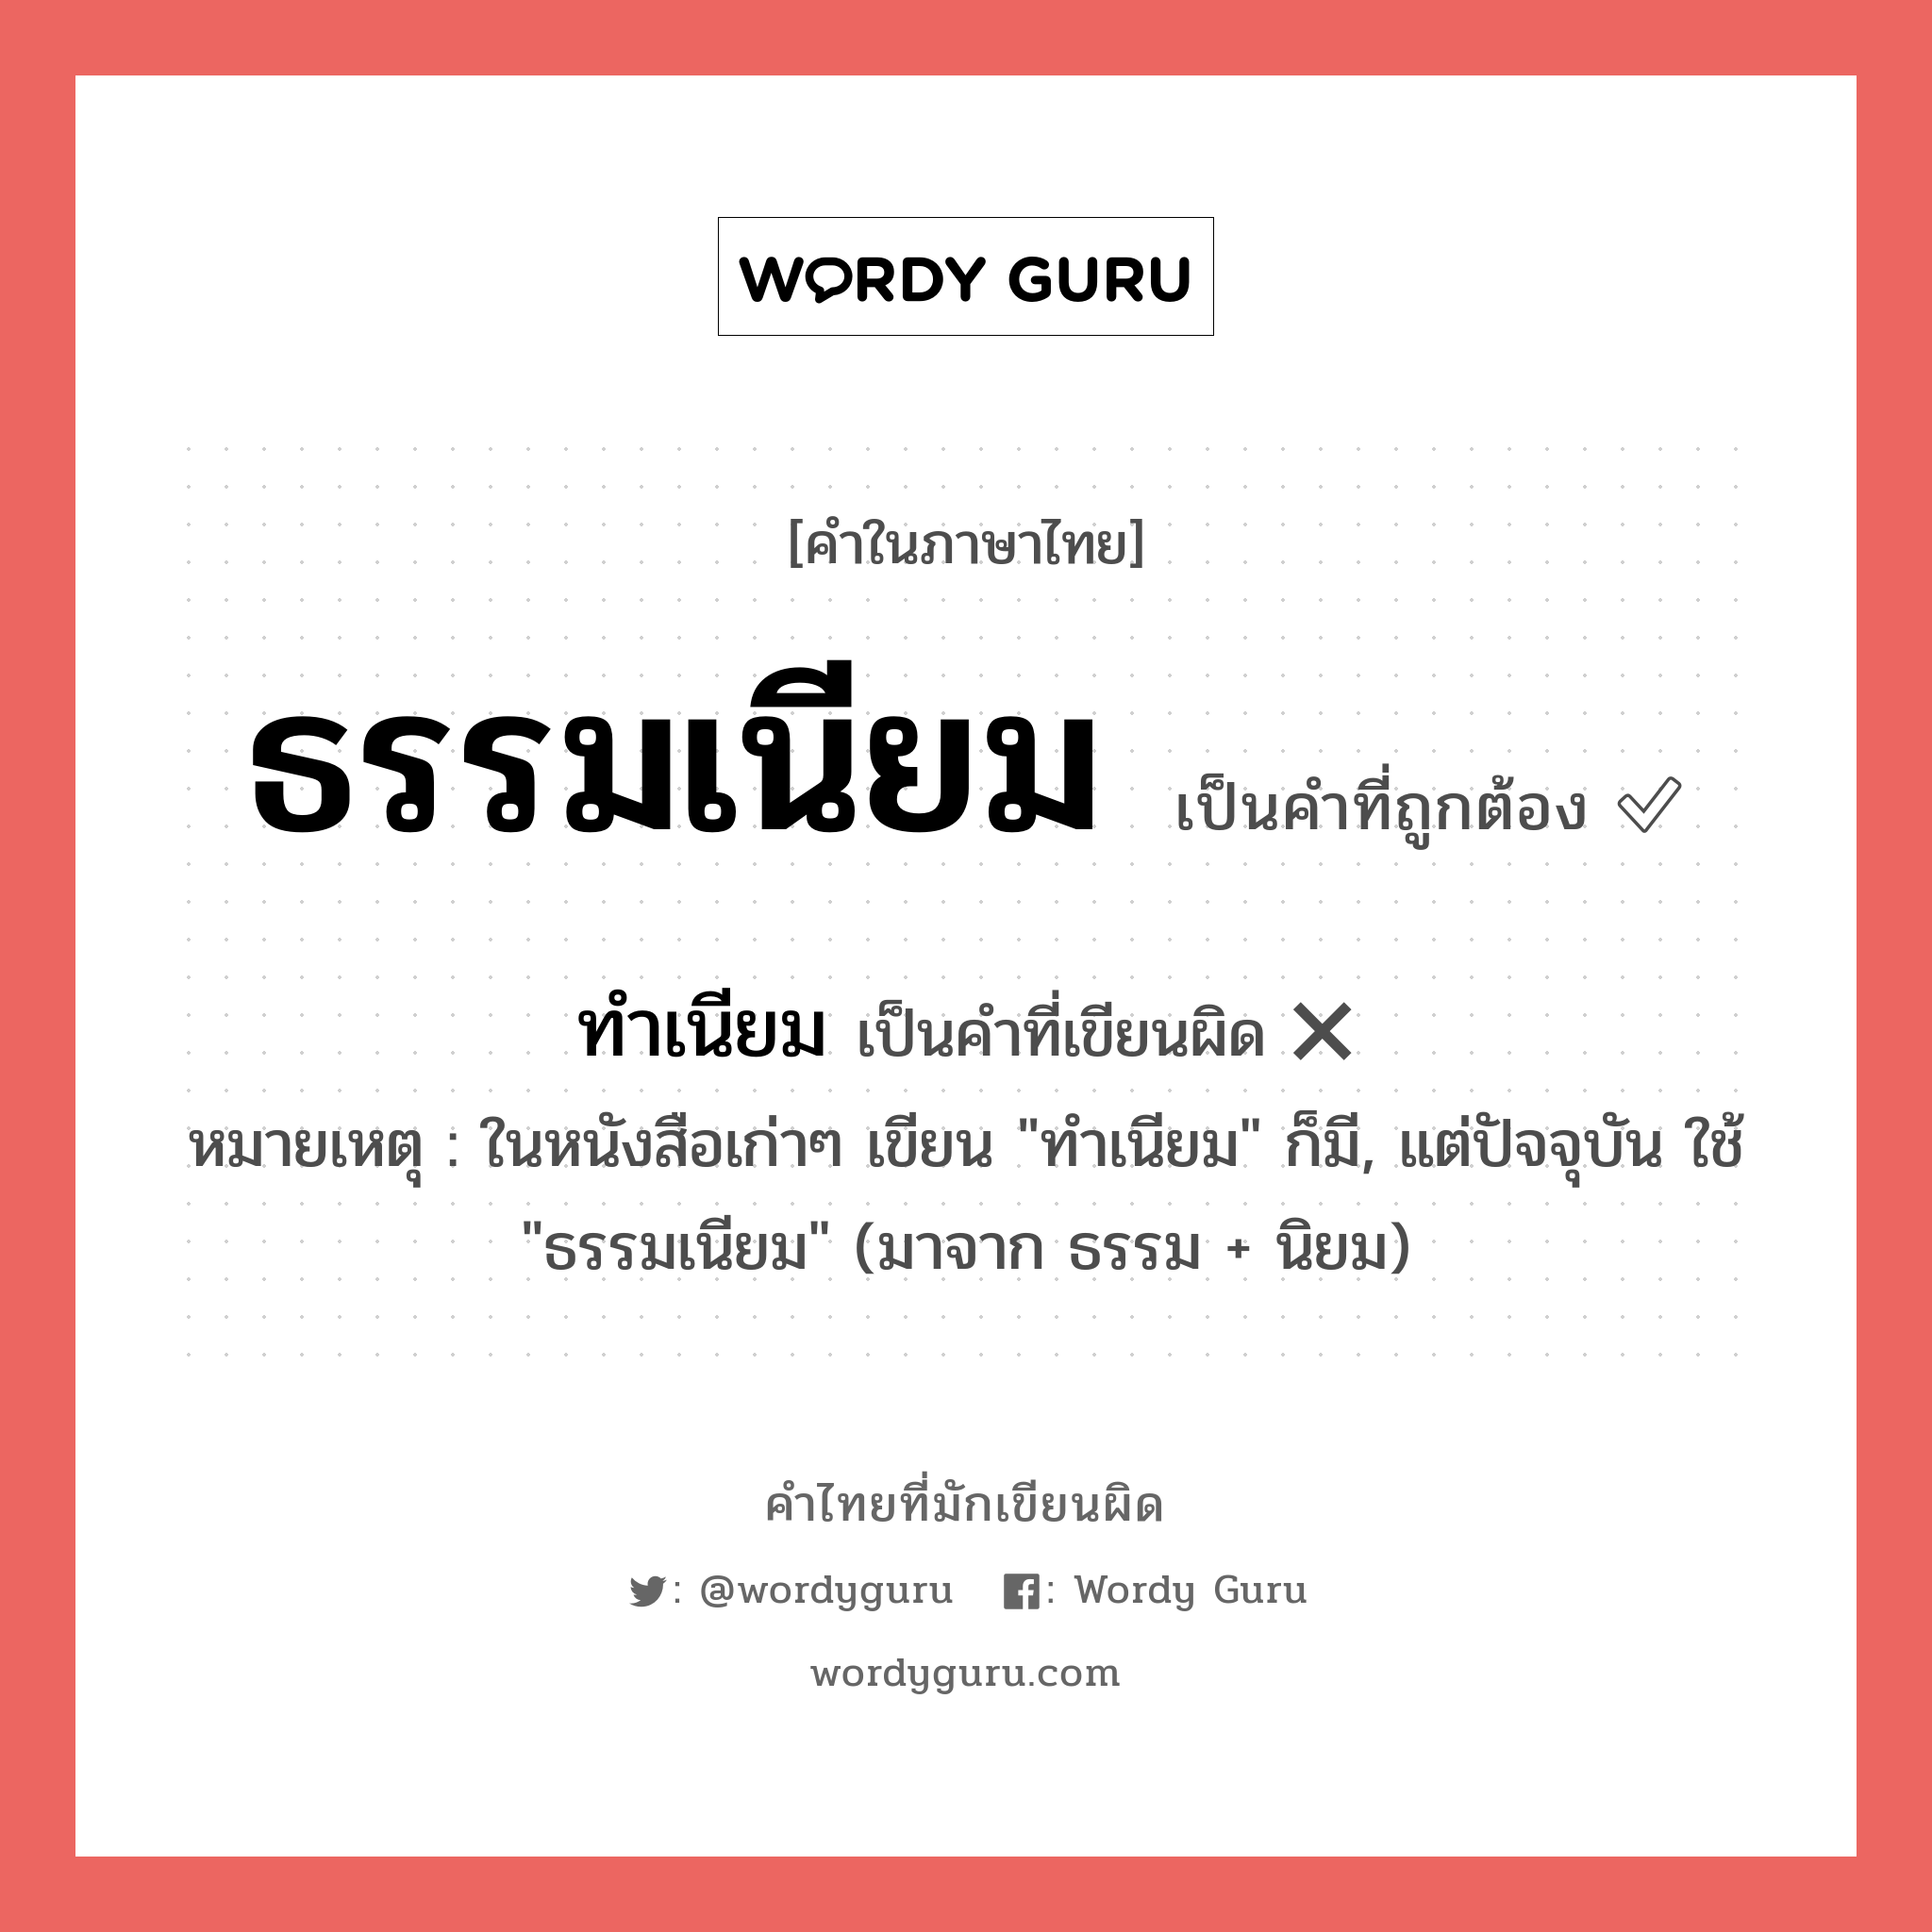 ธรรมเนียม หรือ ทำเนียม เขียนยังไง? คำไหนเขียนถูก?, คำในภาษาไทยที่มักเขียนผิด ธรรมเนียม คำที่ผิด ❌ ทำเนียม หมายเหตุ ในหนังสือเก่าๆ เขียน "ทำเนียม" ก็มี, แต่ปัจจุบัน ใช้ "ธรรมเนียม" (มาจาก ธรรม + นิยม)